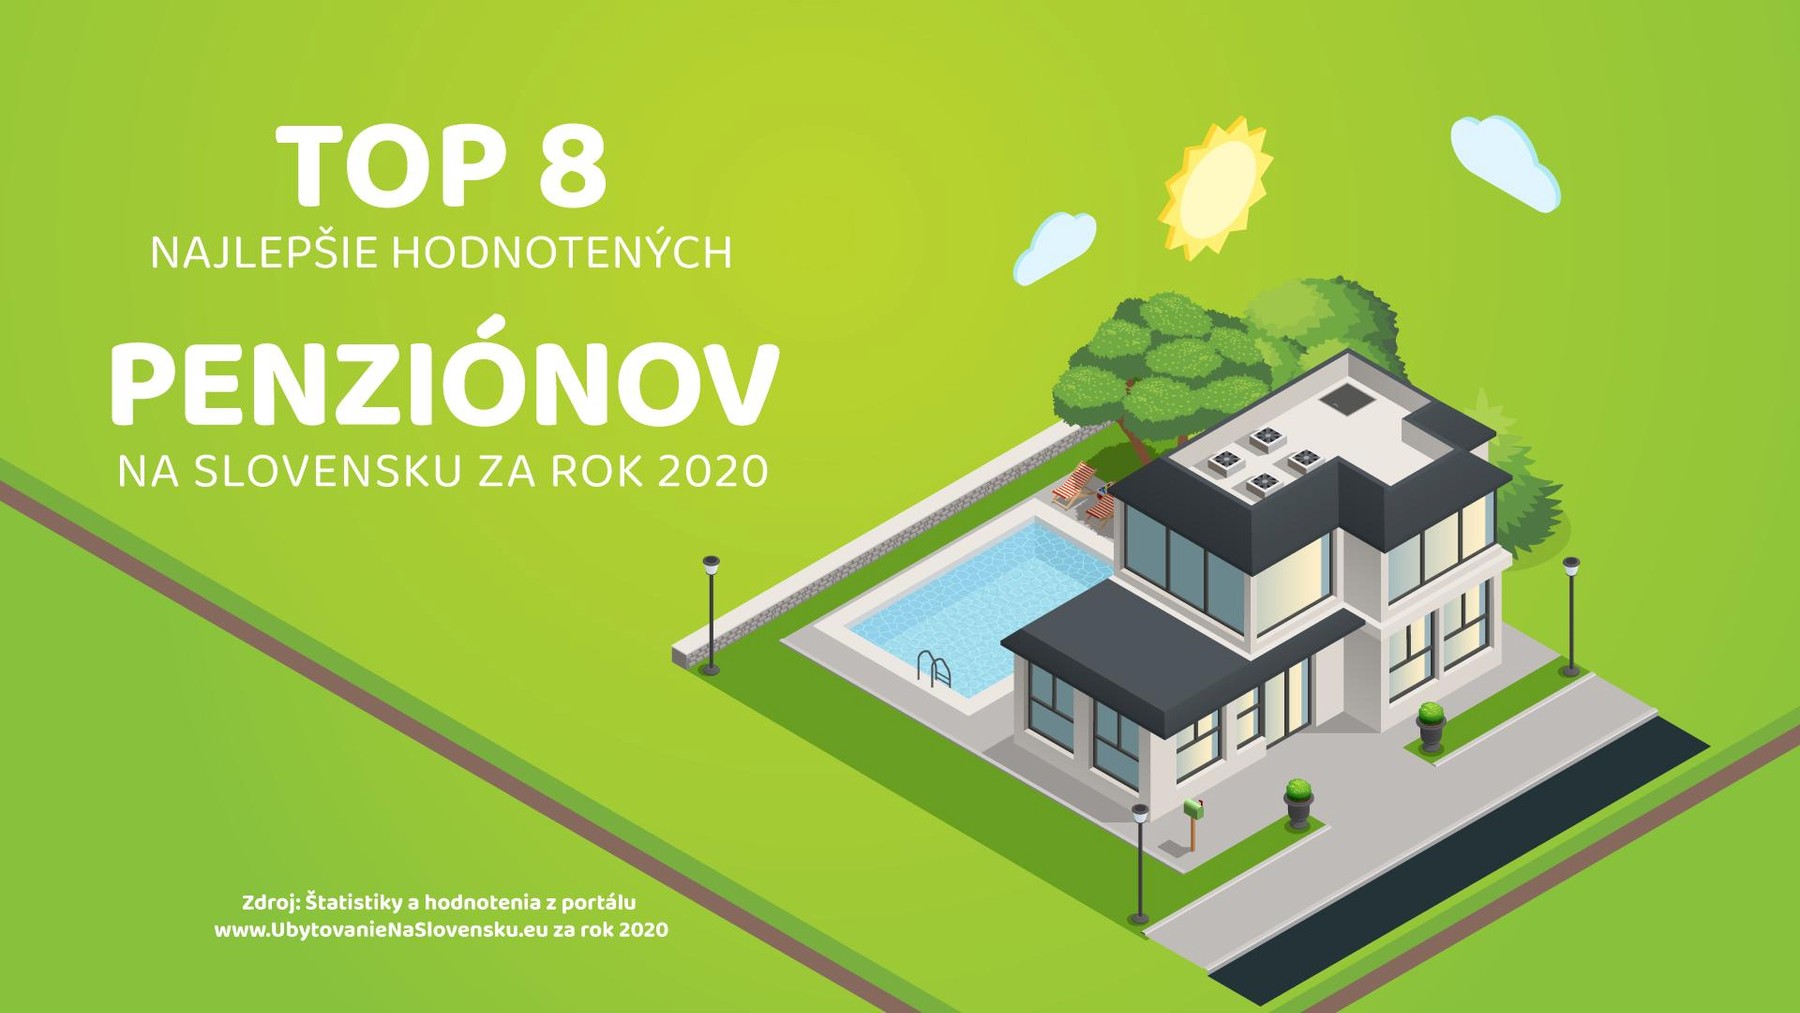 TOP 8 najlepšie hodnotených penziónov na Slovensku za rok 2020